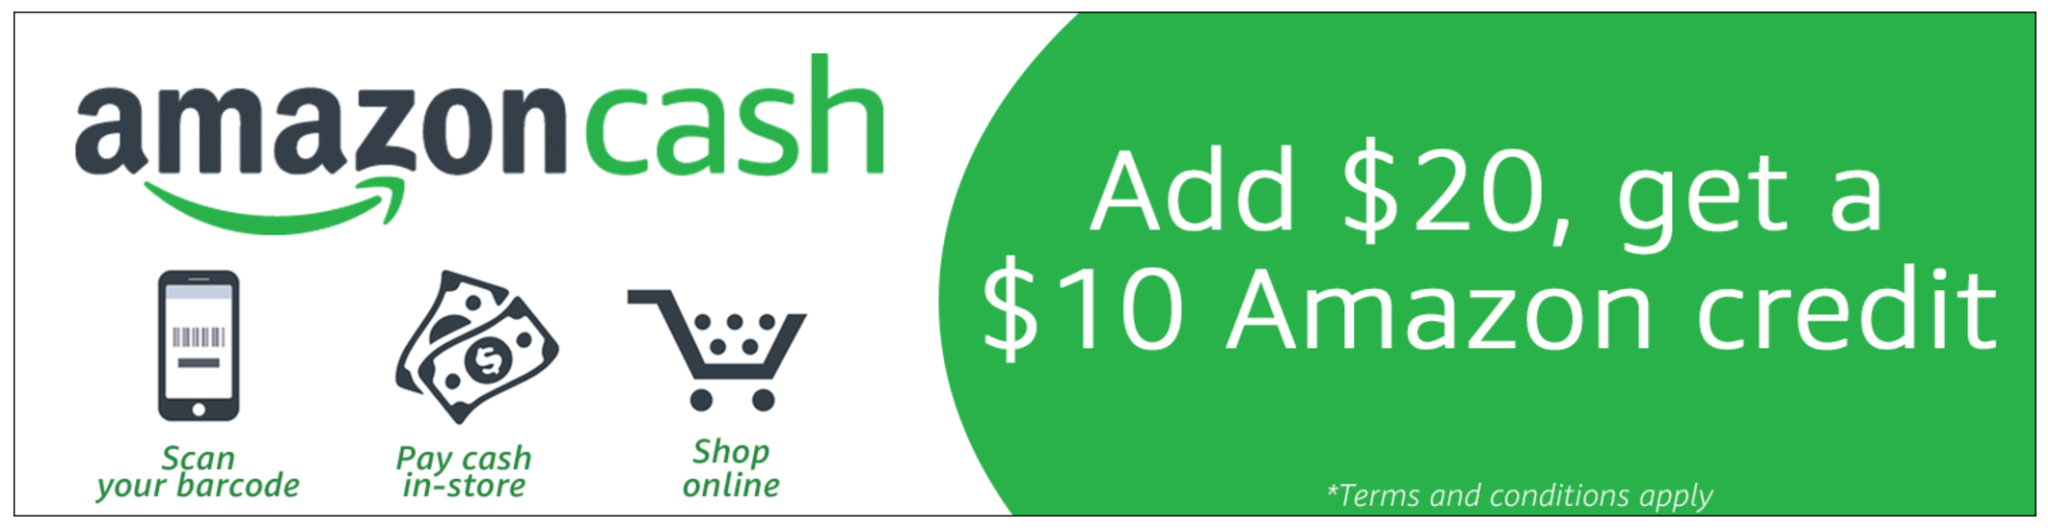 Amazon Cash: Add $20, Get a $10 Credit!